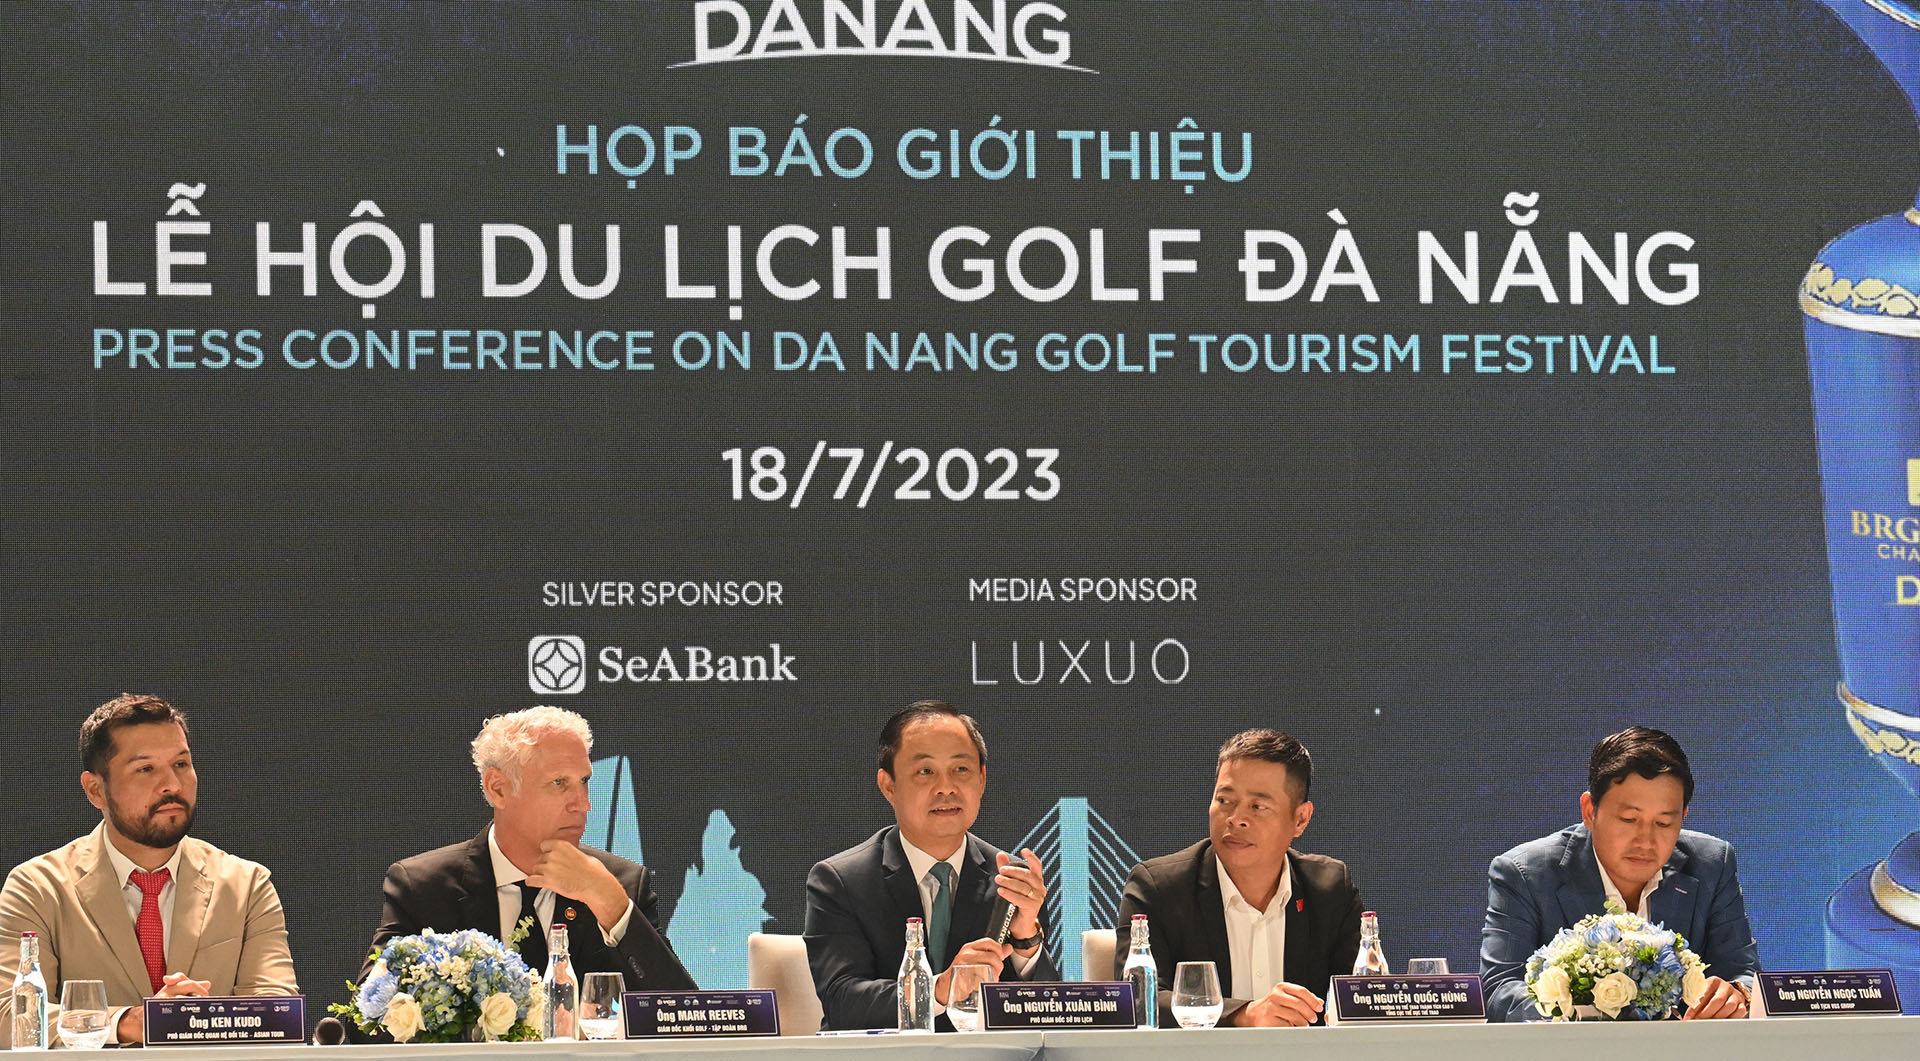 Hop Bao Ki Thuat Truoc Giai Dau Brg Open Golf Championship Danang 2023 Sap Mo Man 2